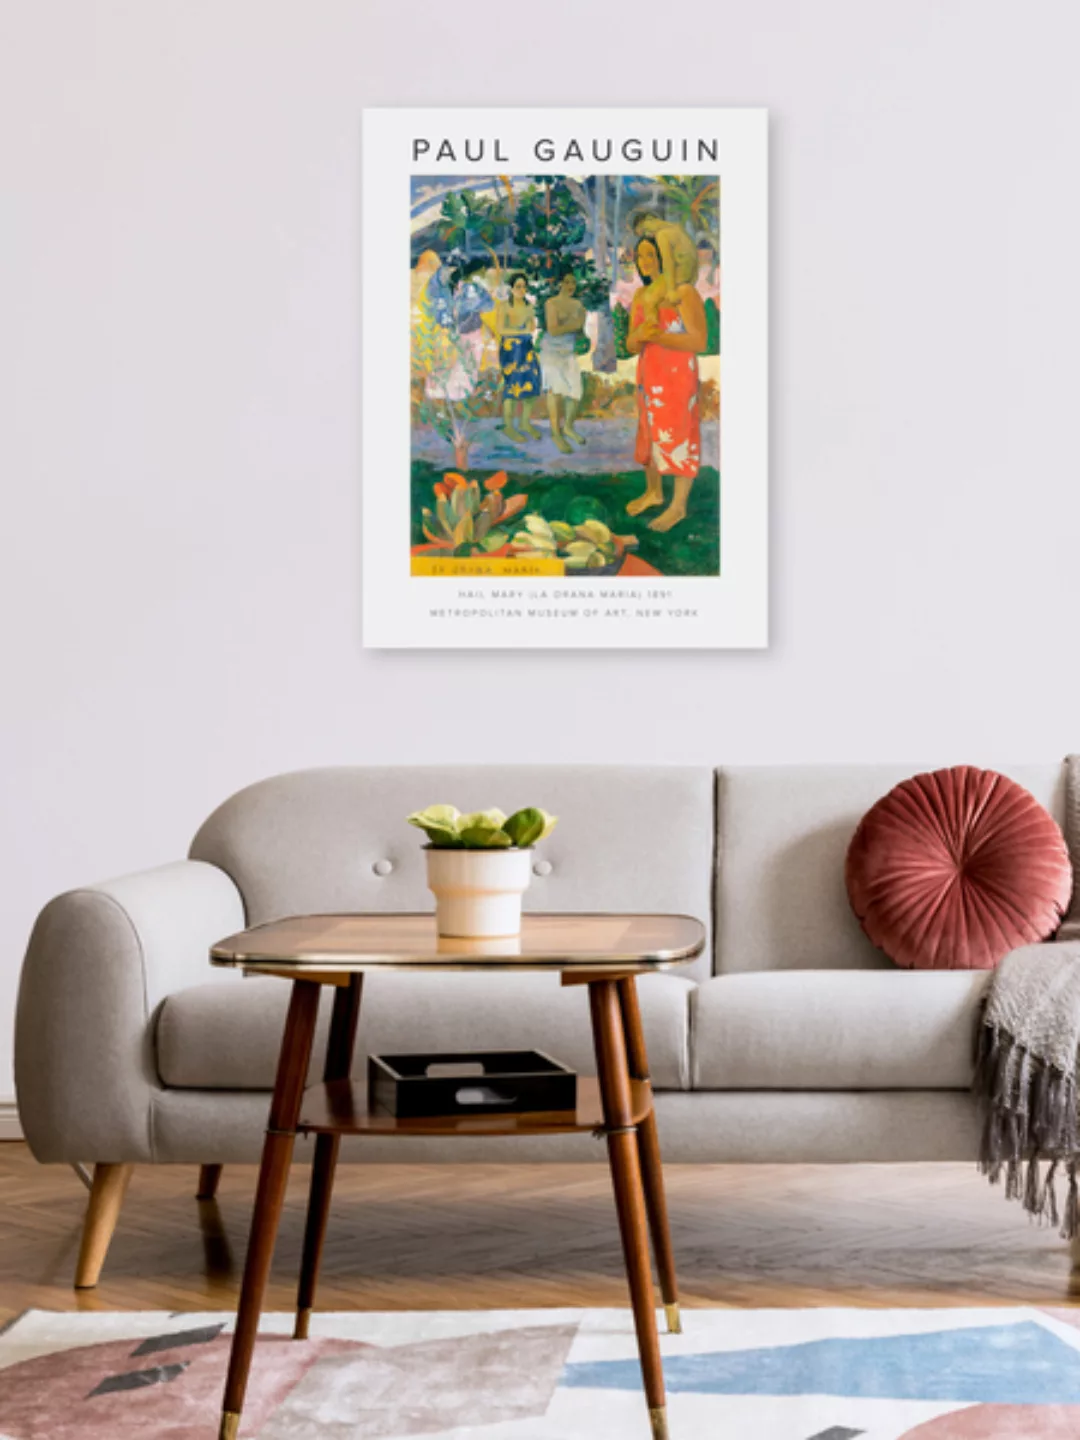 Poster / Leinwandbild - Hail Mary (La Orana Maria) Von Paul Gauguin günstig online kaufen